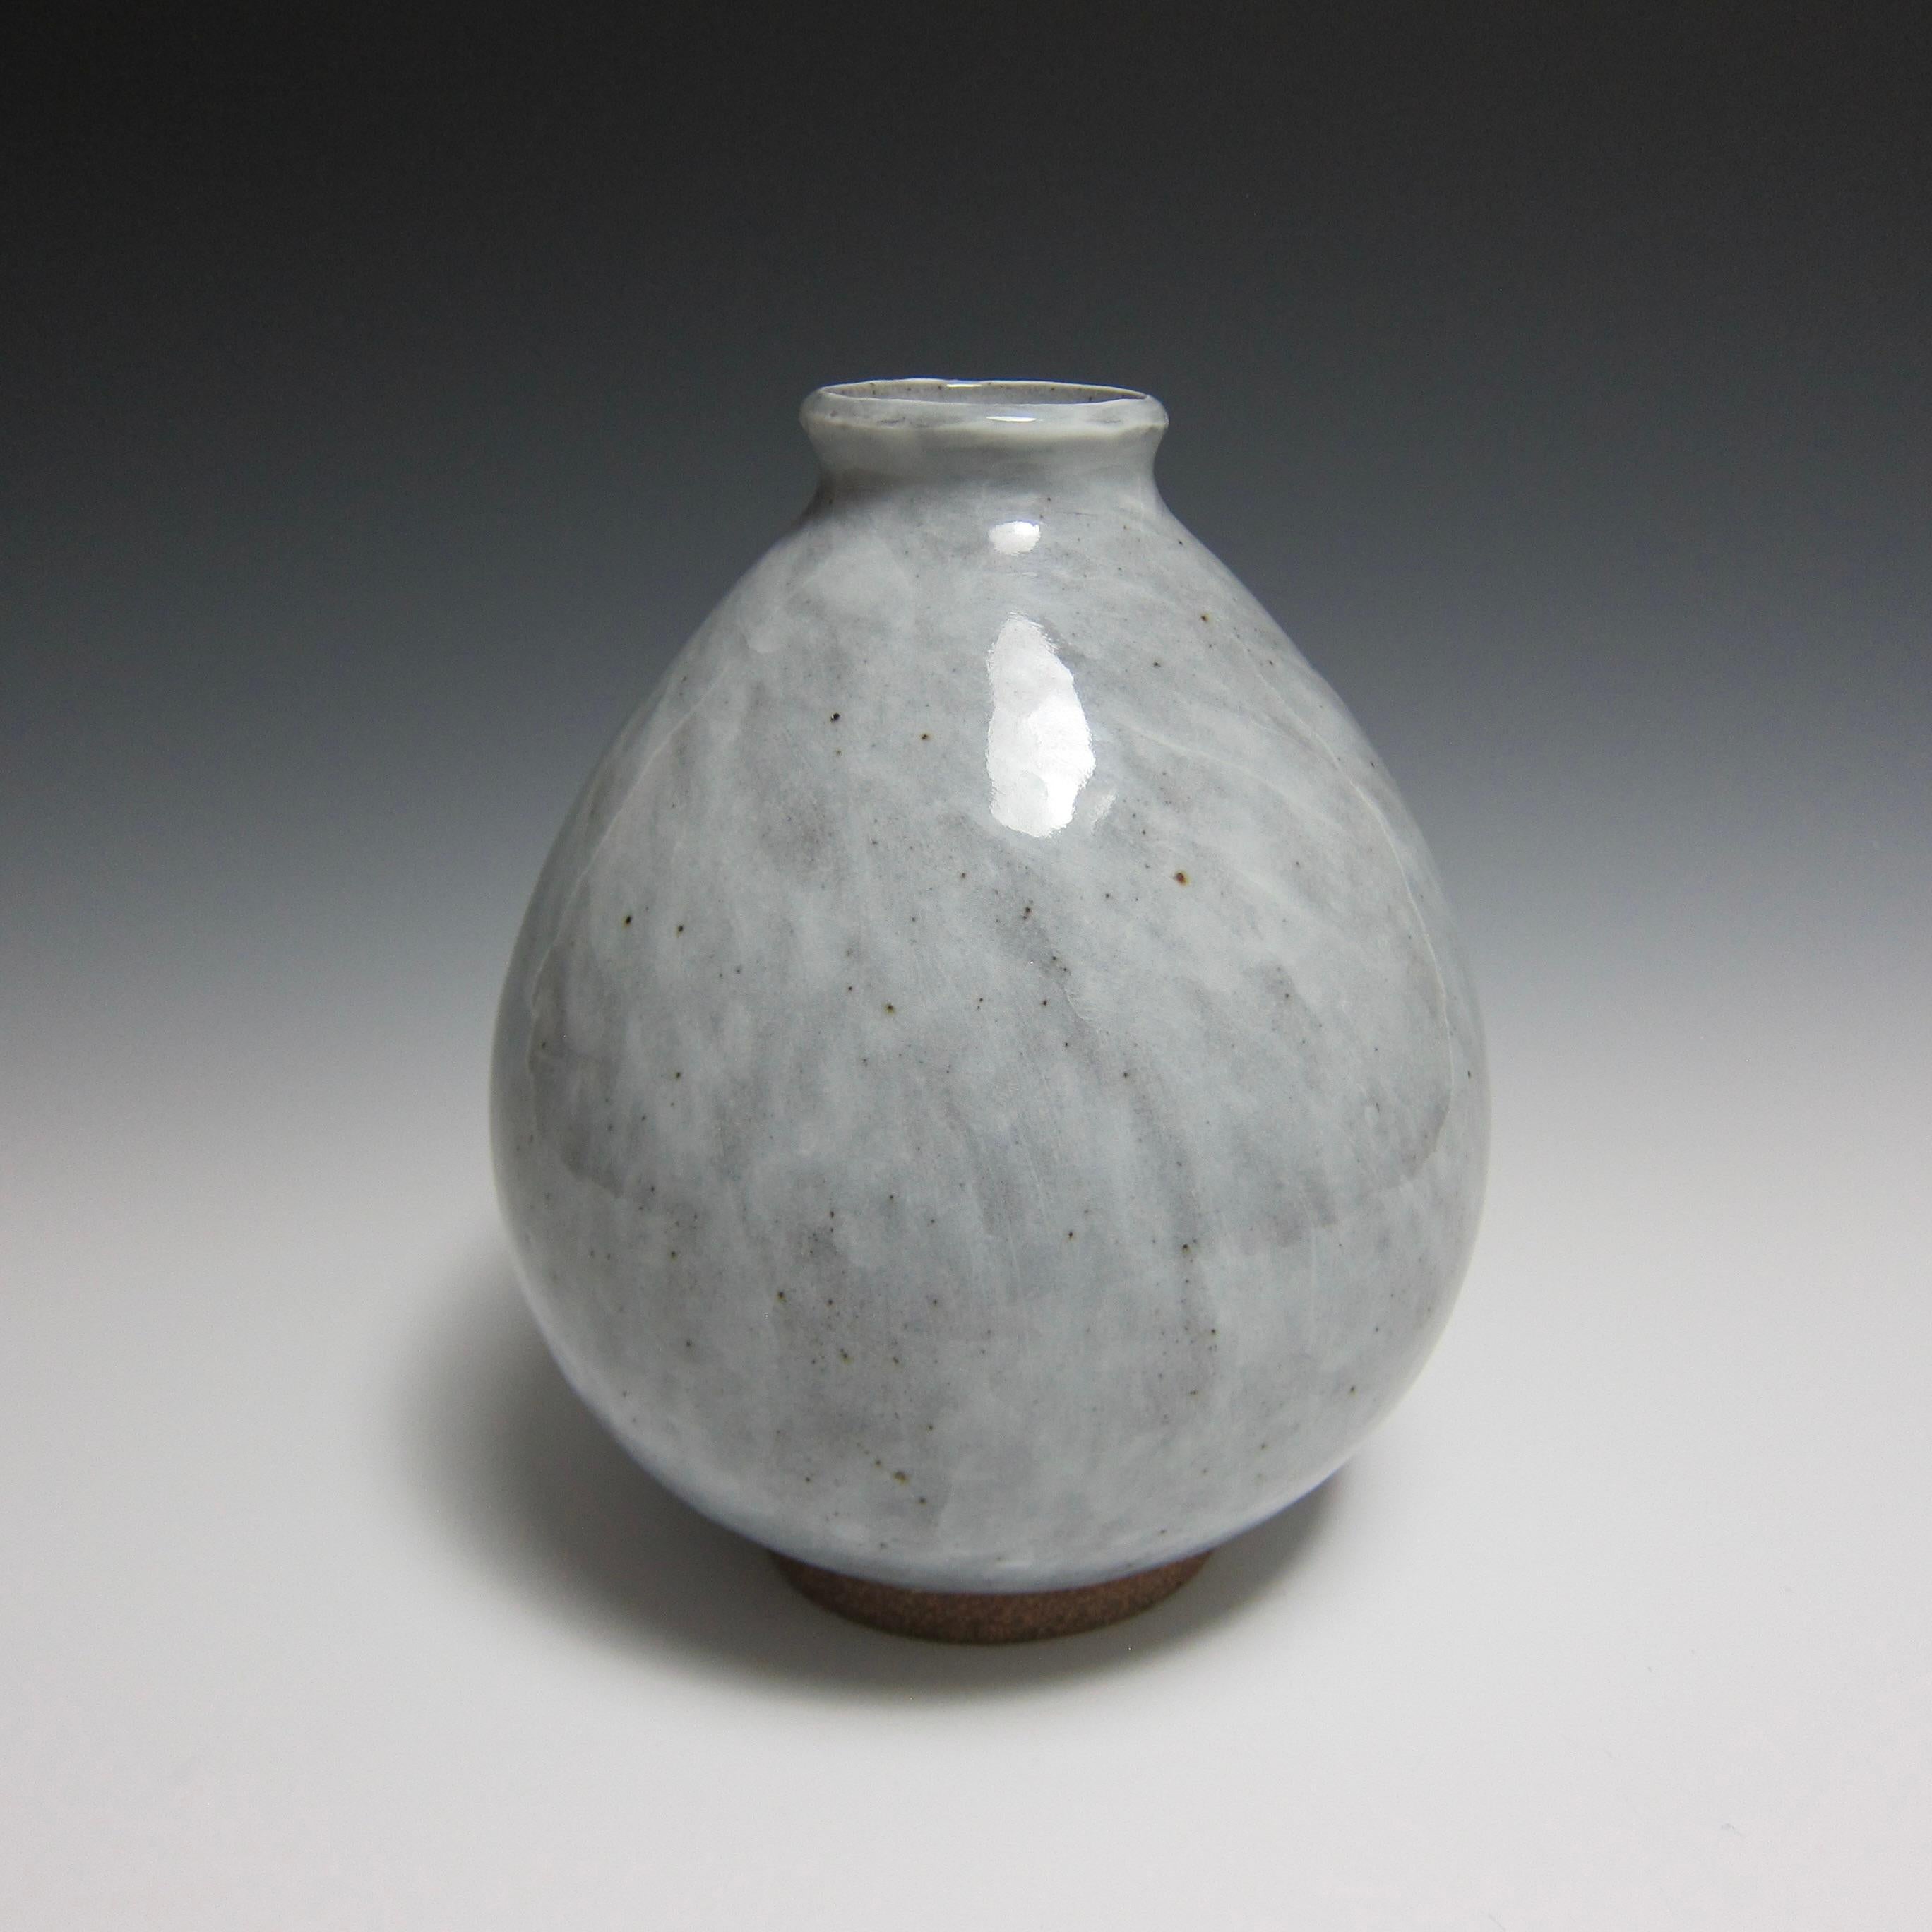 Radgedrehte Keramikvase/ Blumenflasche von Jason Fox

Als Teil seiner Flower Bottle Serie hat sich der amerikanische Keramikkünstler Jason Fox von der gleichnamigen antiken koreanischen Silhouette inspirieren lassen, um eine Vase zu schaffen, die